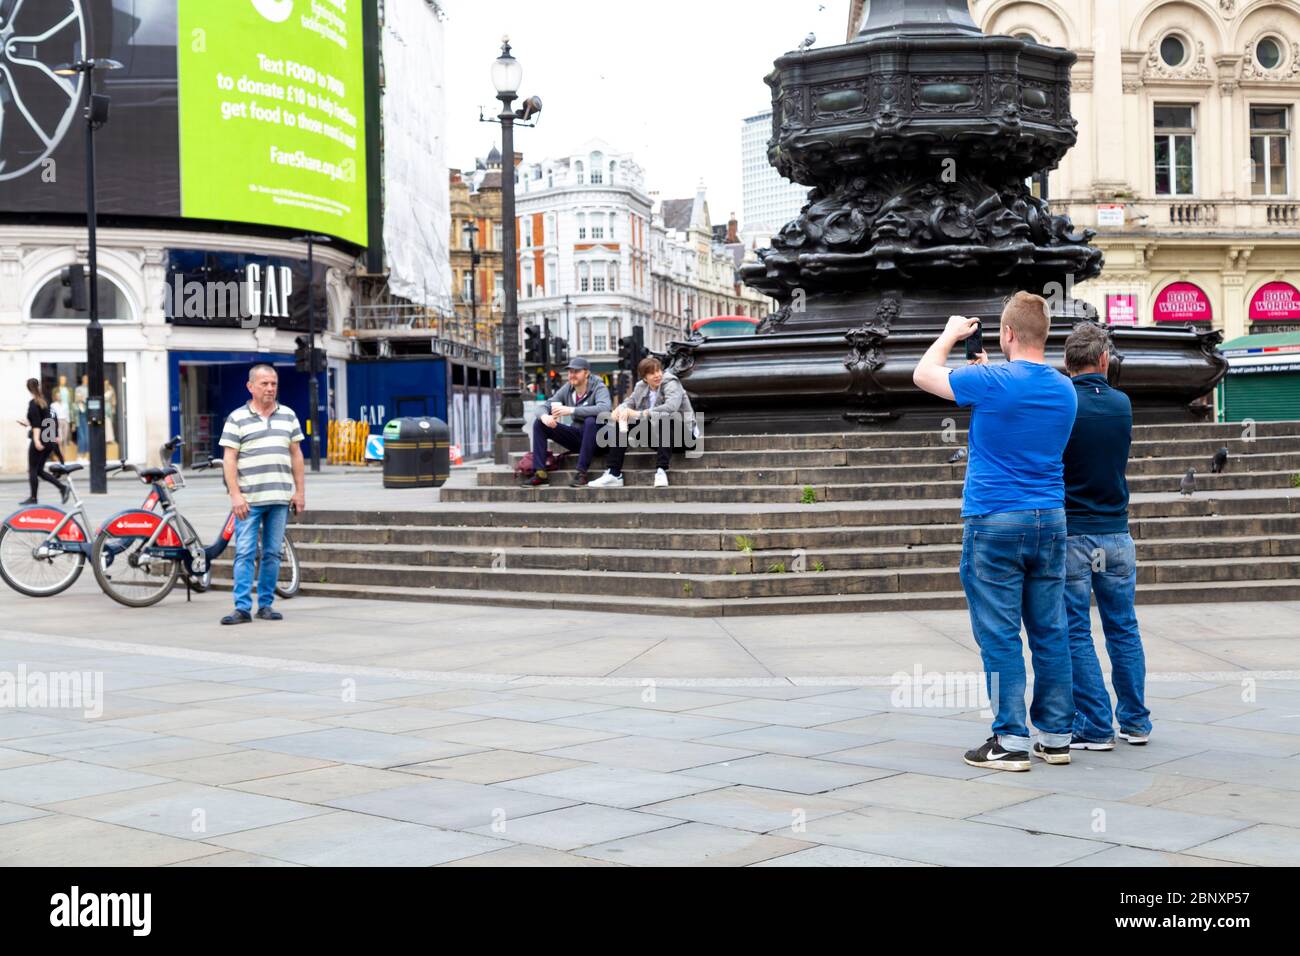 16 Mai 2020 London, UK - Touristen im Piccadilly Circus während der Sperrung der Coronavirus-Pandemie fotografieren Stockfoto